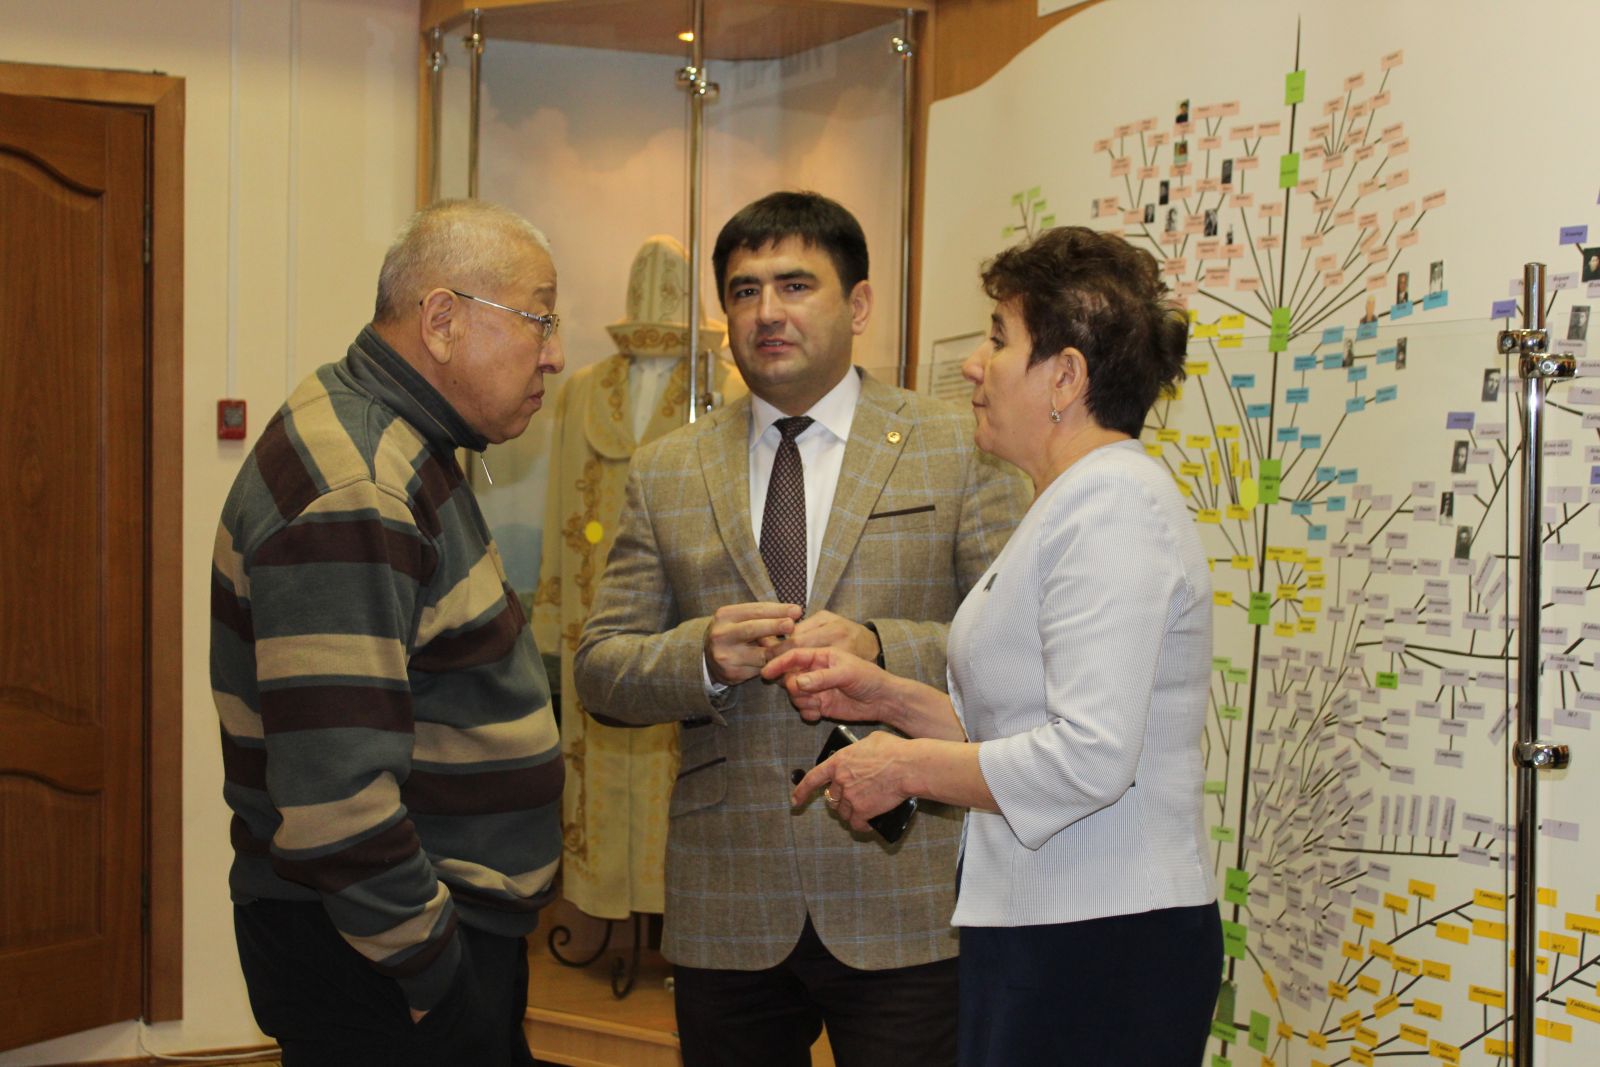 Фото: Кукмор посетила делегация из Кыргызстана во главе с сыном Чингиза Айтматова Аскаром Айтматовым